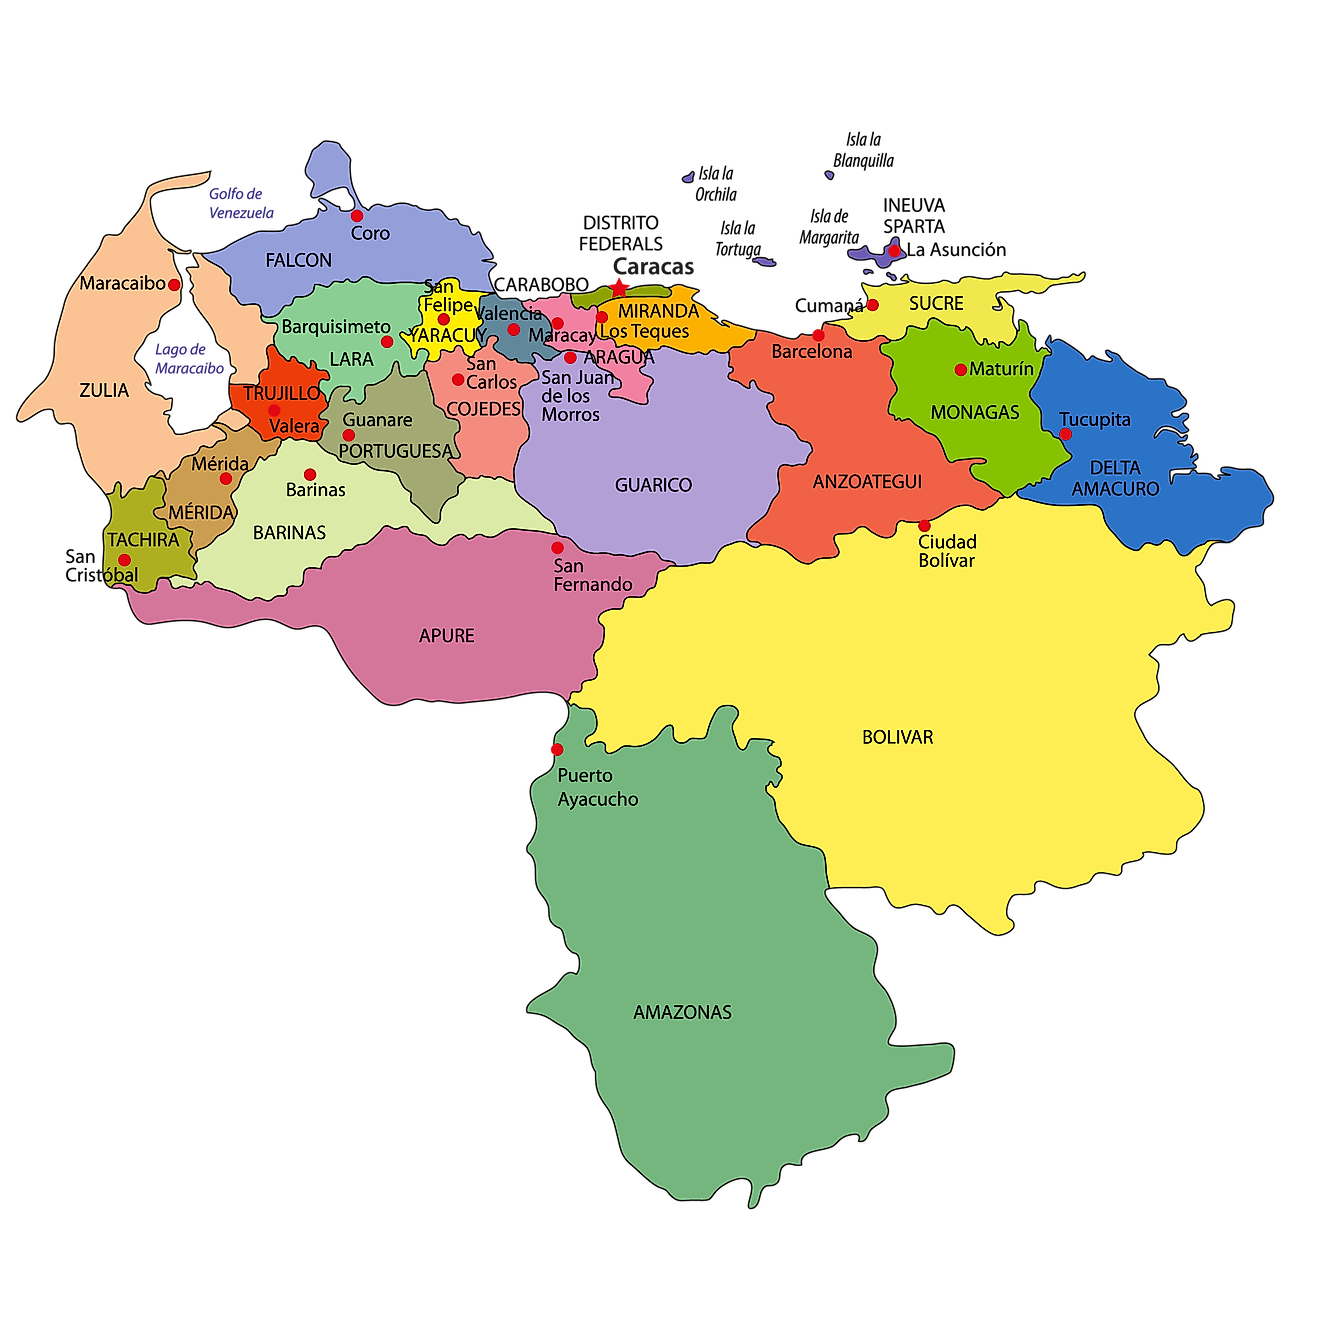 Mapa Político de Venezuela mostrando sus 23 estados, 1 distrito capital y las Dependencias Federales y la ciudad capital - Caracas